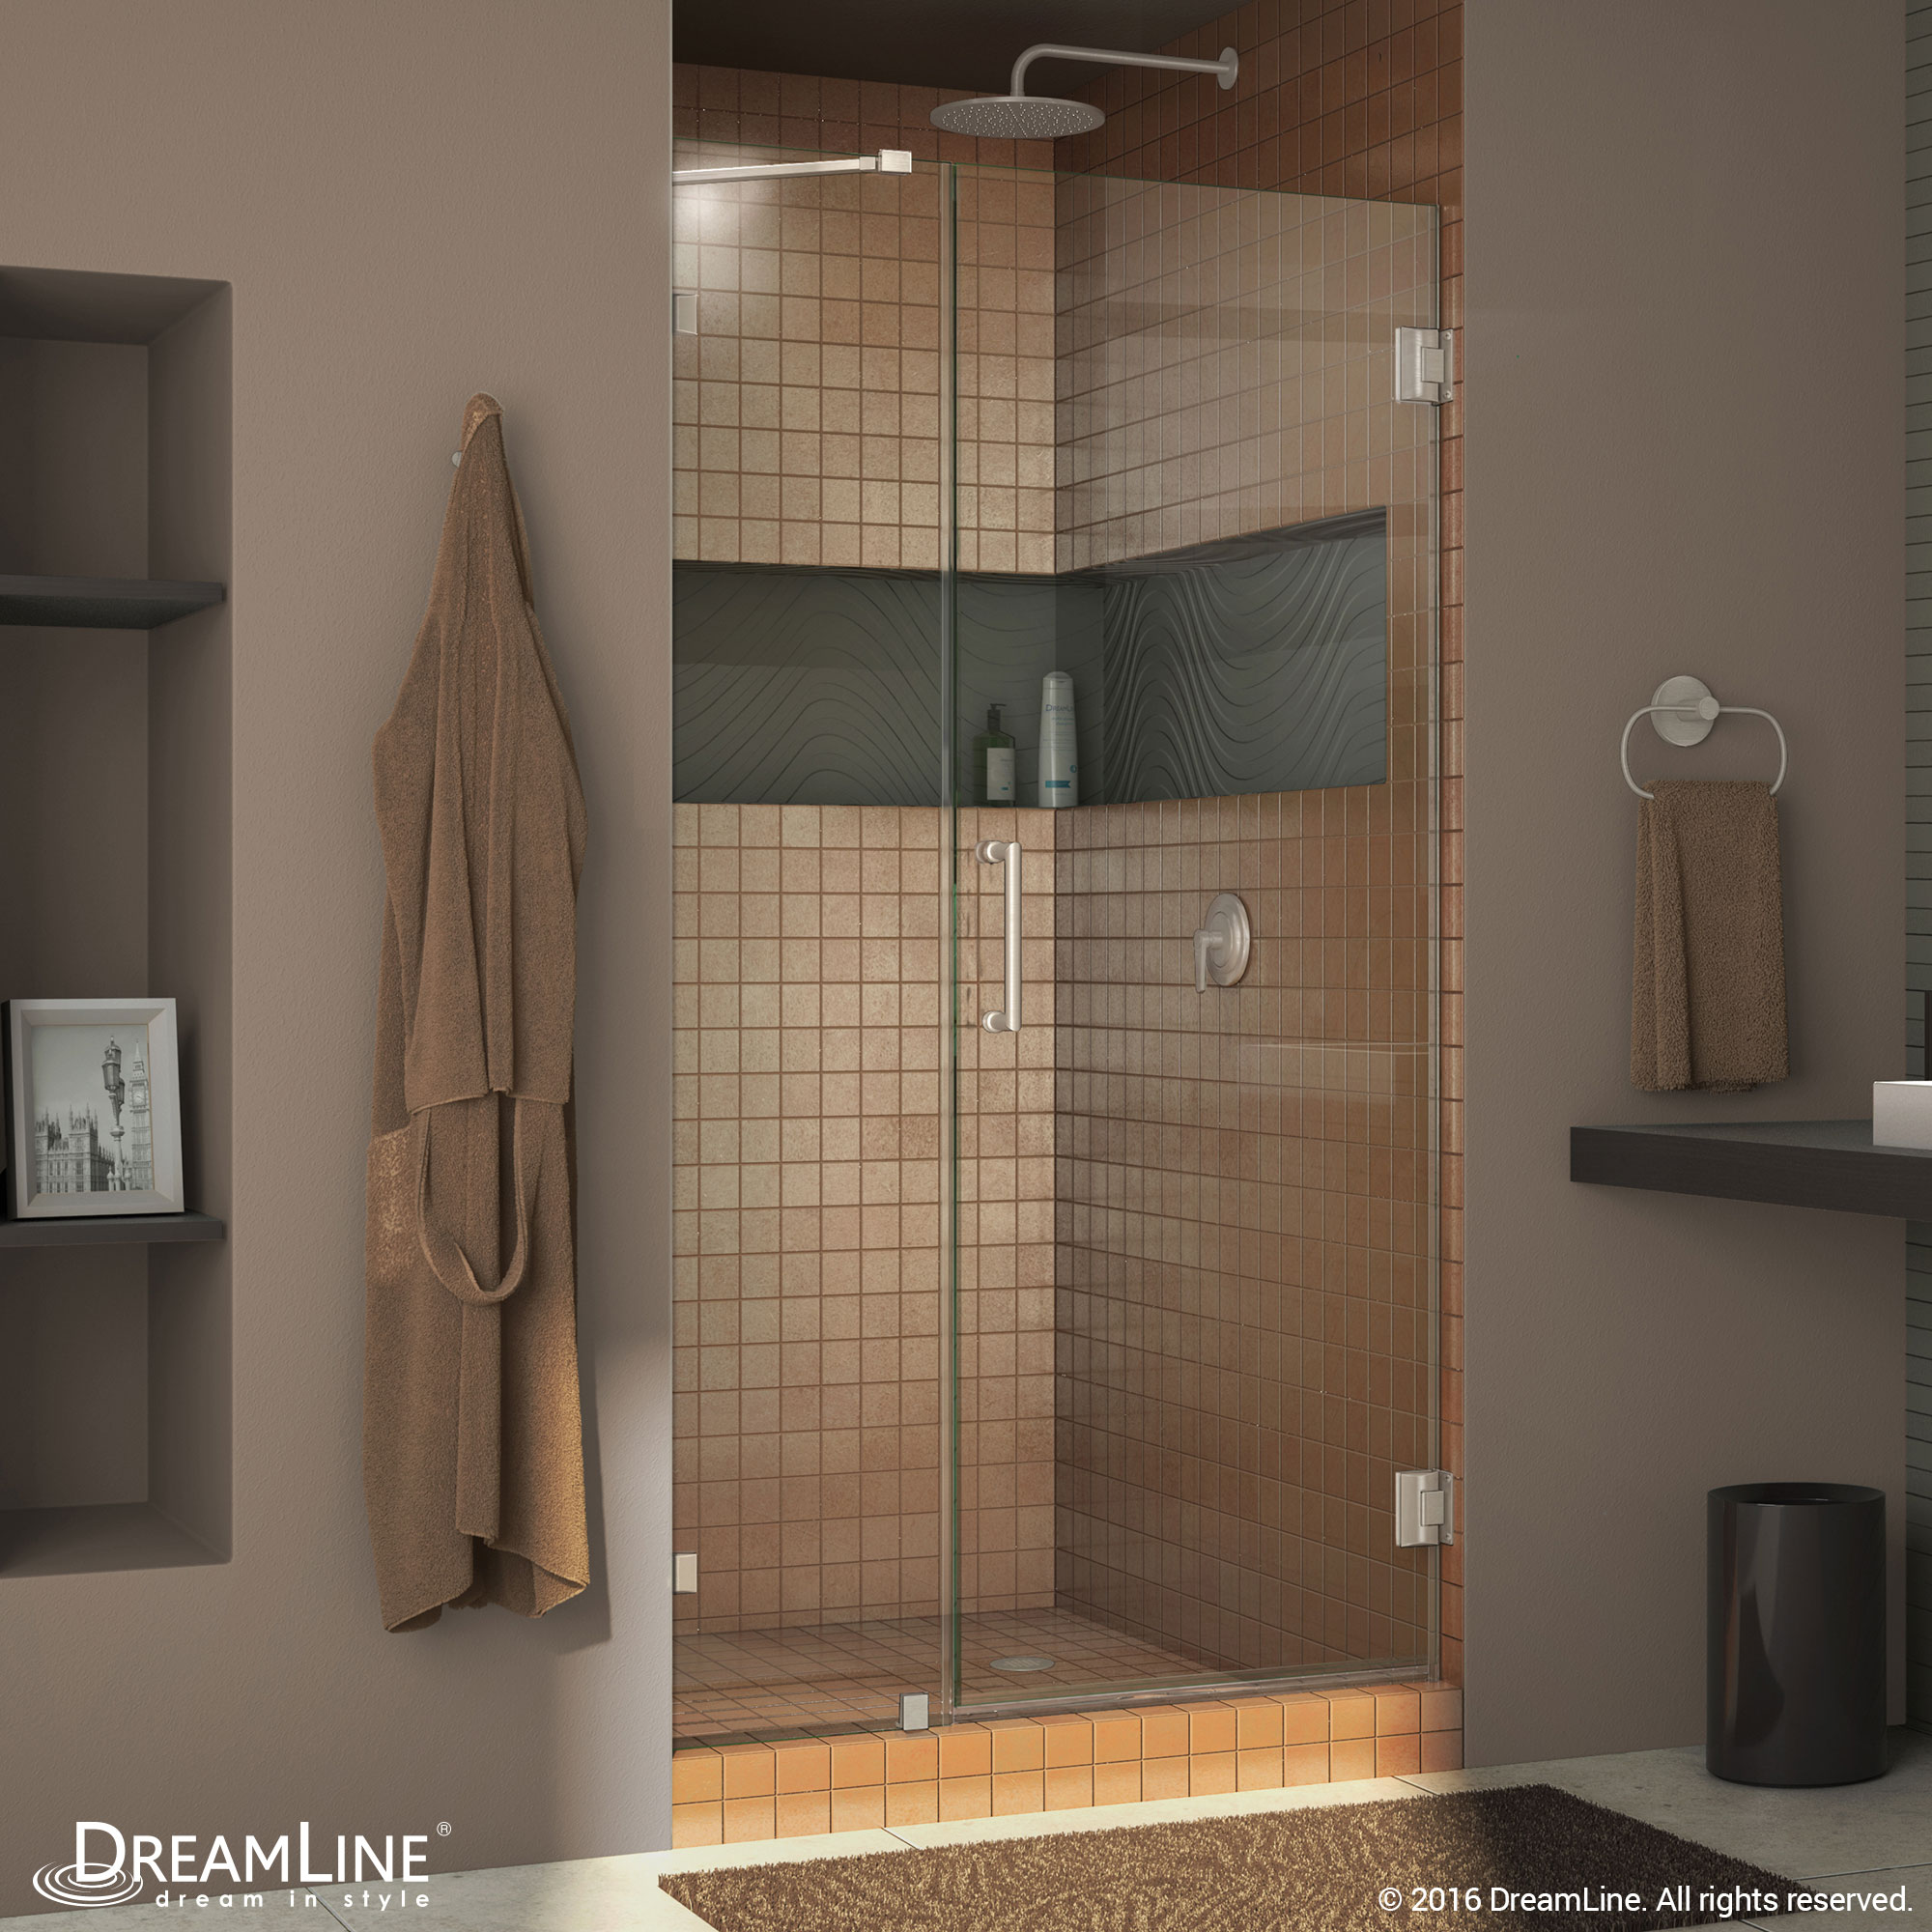 Dreamline SHDR-23487210-04 Brushed Nickel Radiance 48" Hinged Shower Door